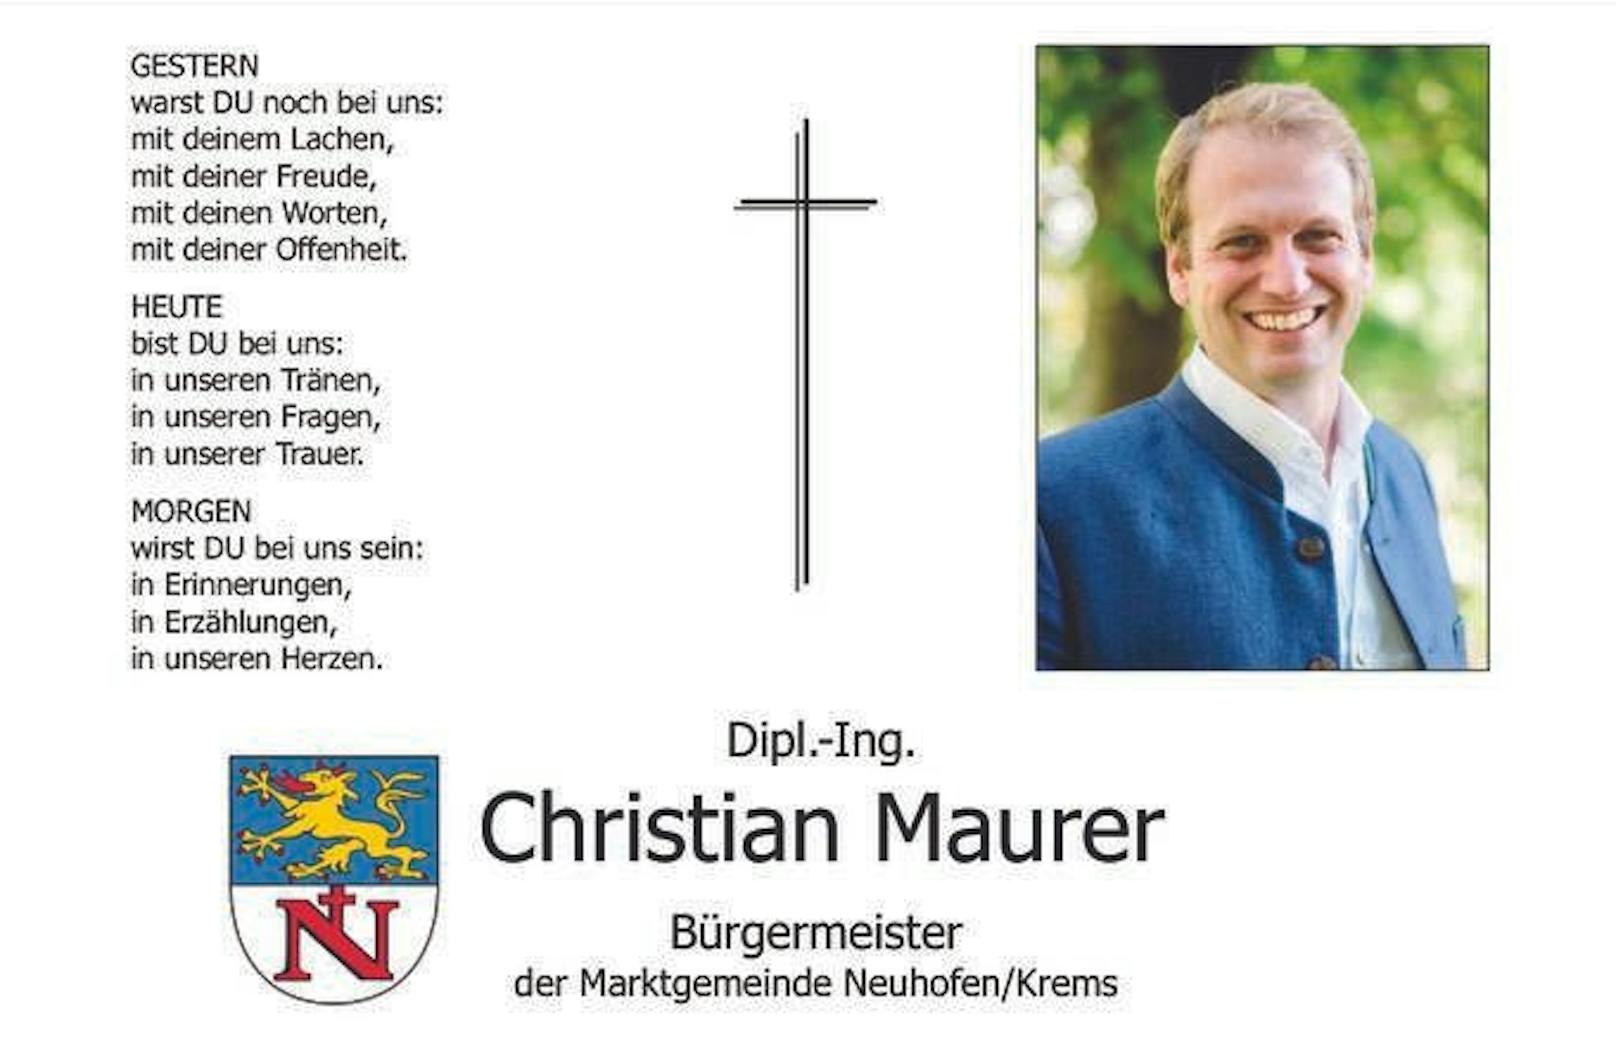 Christian Maurer starb am Samstag mit nur 38 Jahren.